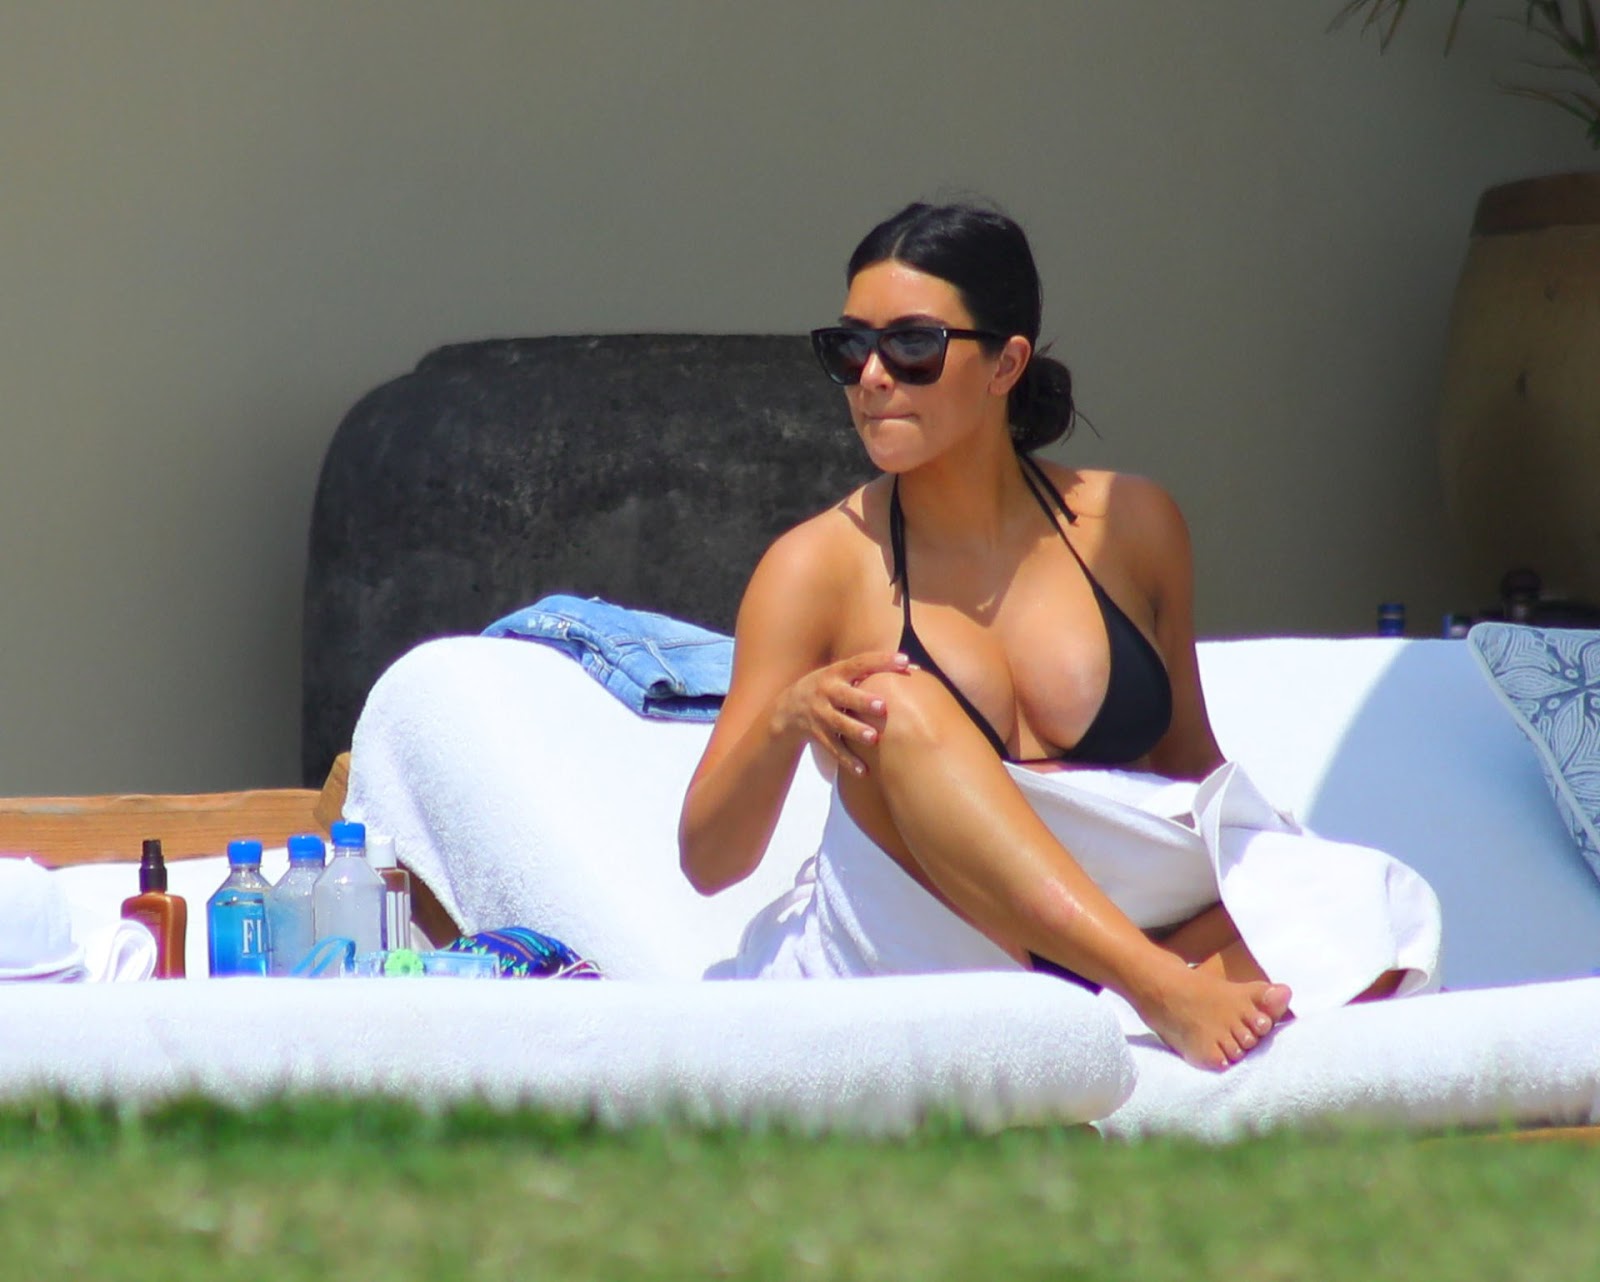 Kim Kardashian Bikini Twitter